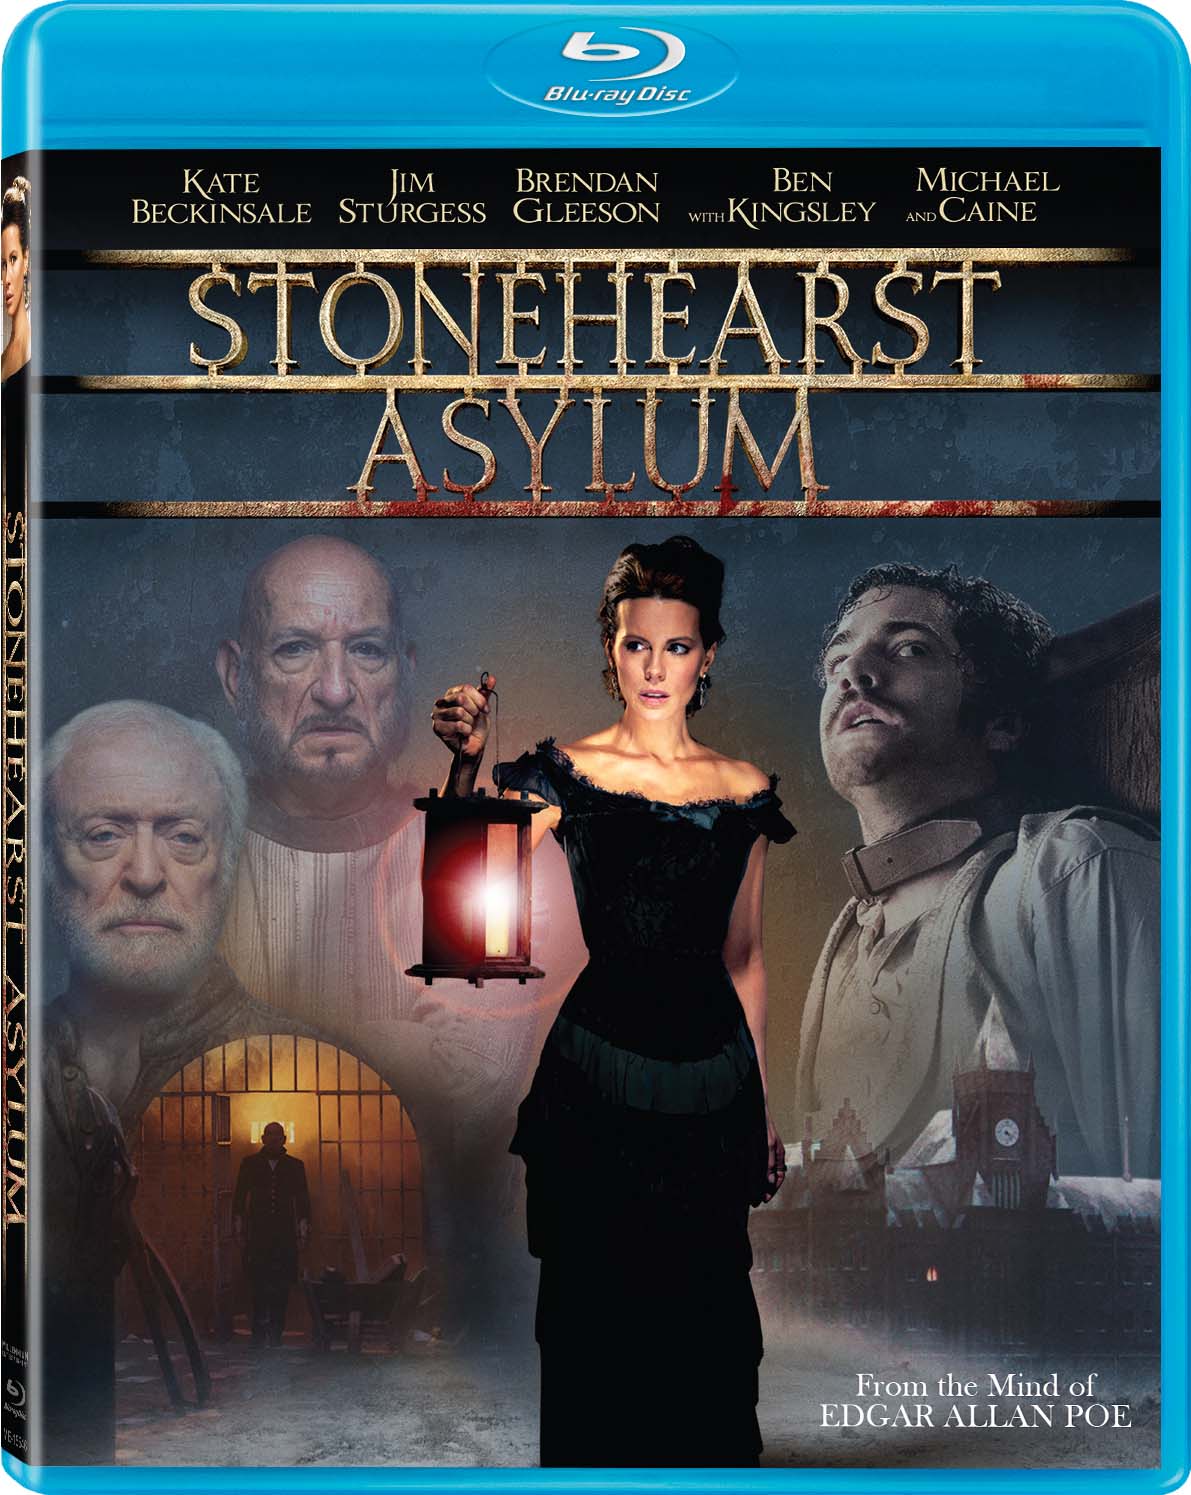 Stonehearst Asylum Blu-ray Review